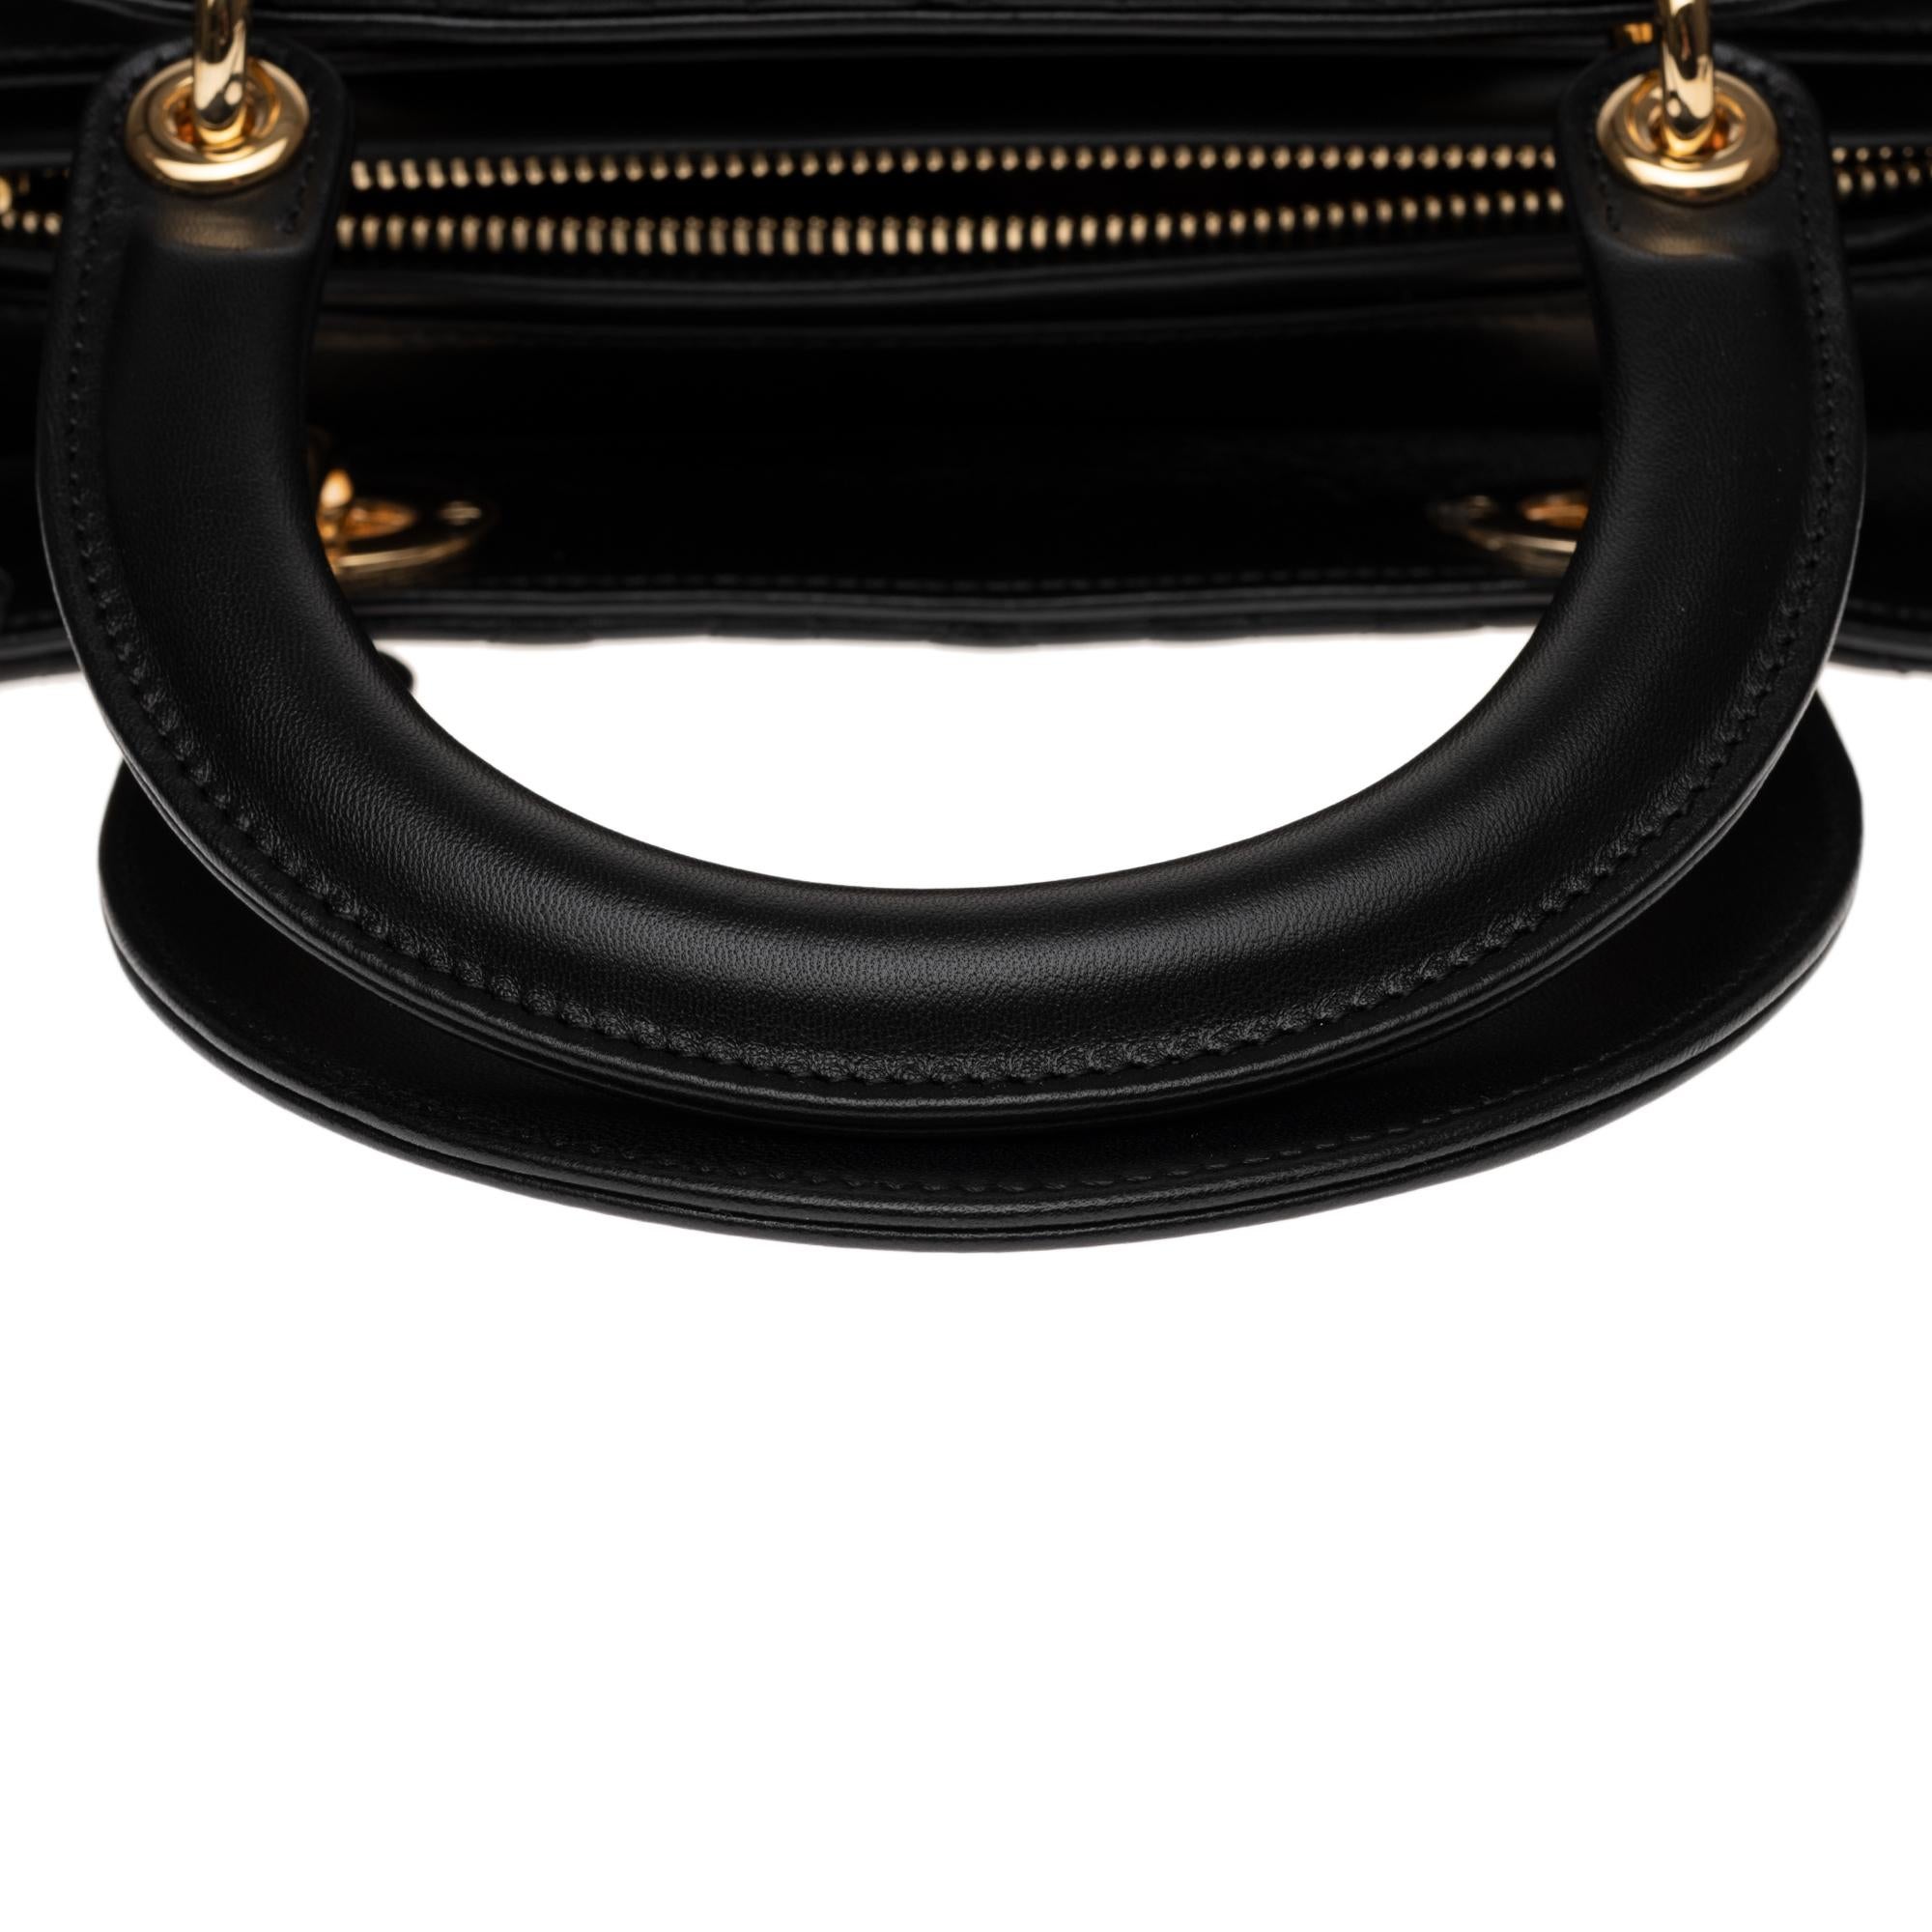 Women's  Christian Dior Lady Dior MM (Medium size) handbag in black cannage leather, GHW